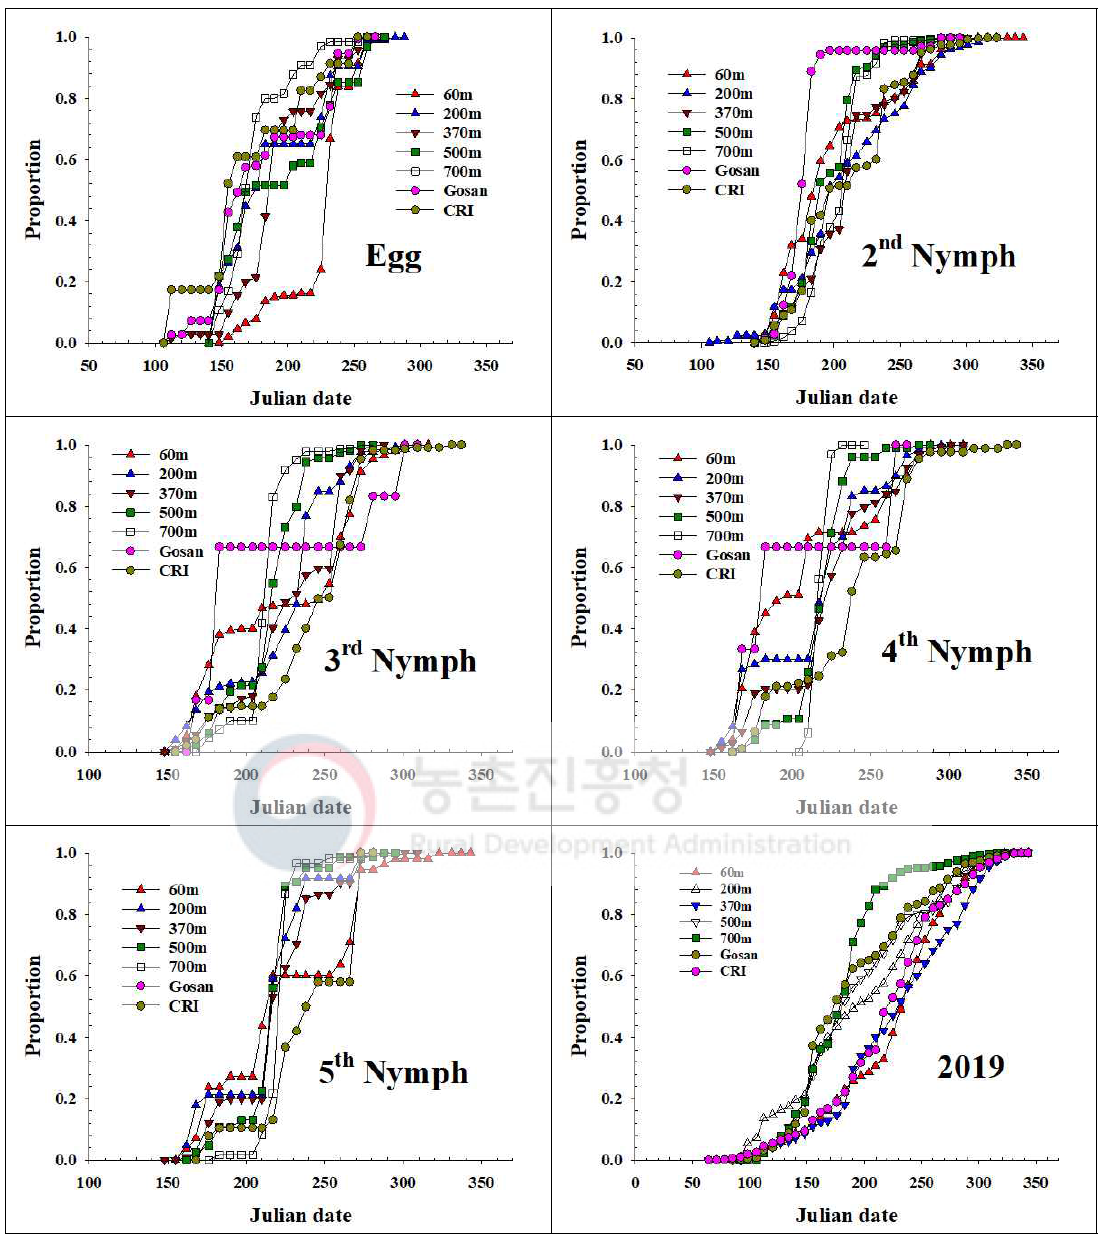 제주지역 톱다리개미허리노린재 발육단계별 개체수 누적증가 지역간 비교(2019)